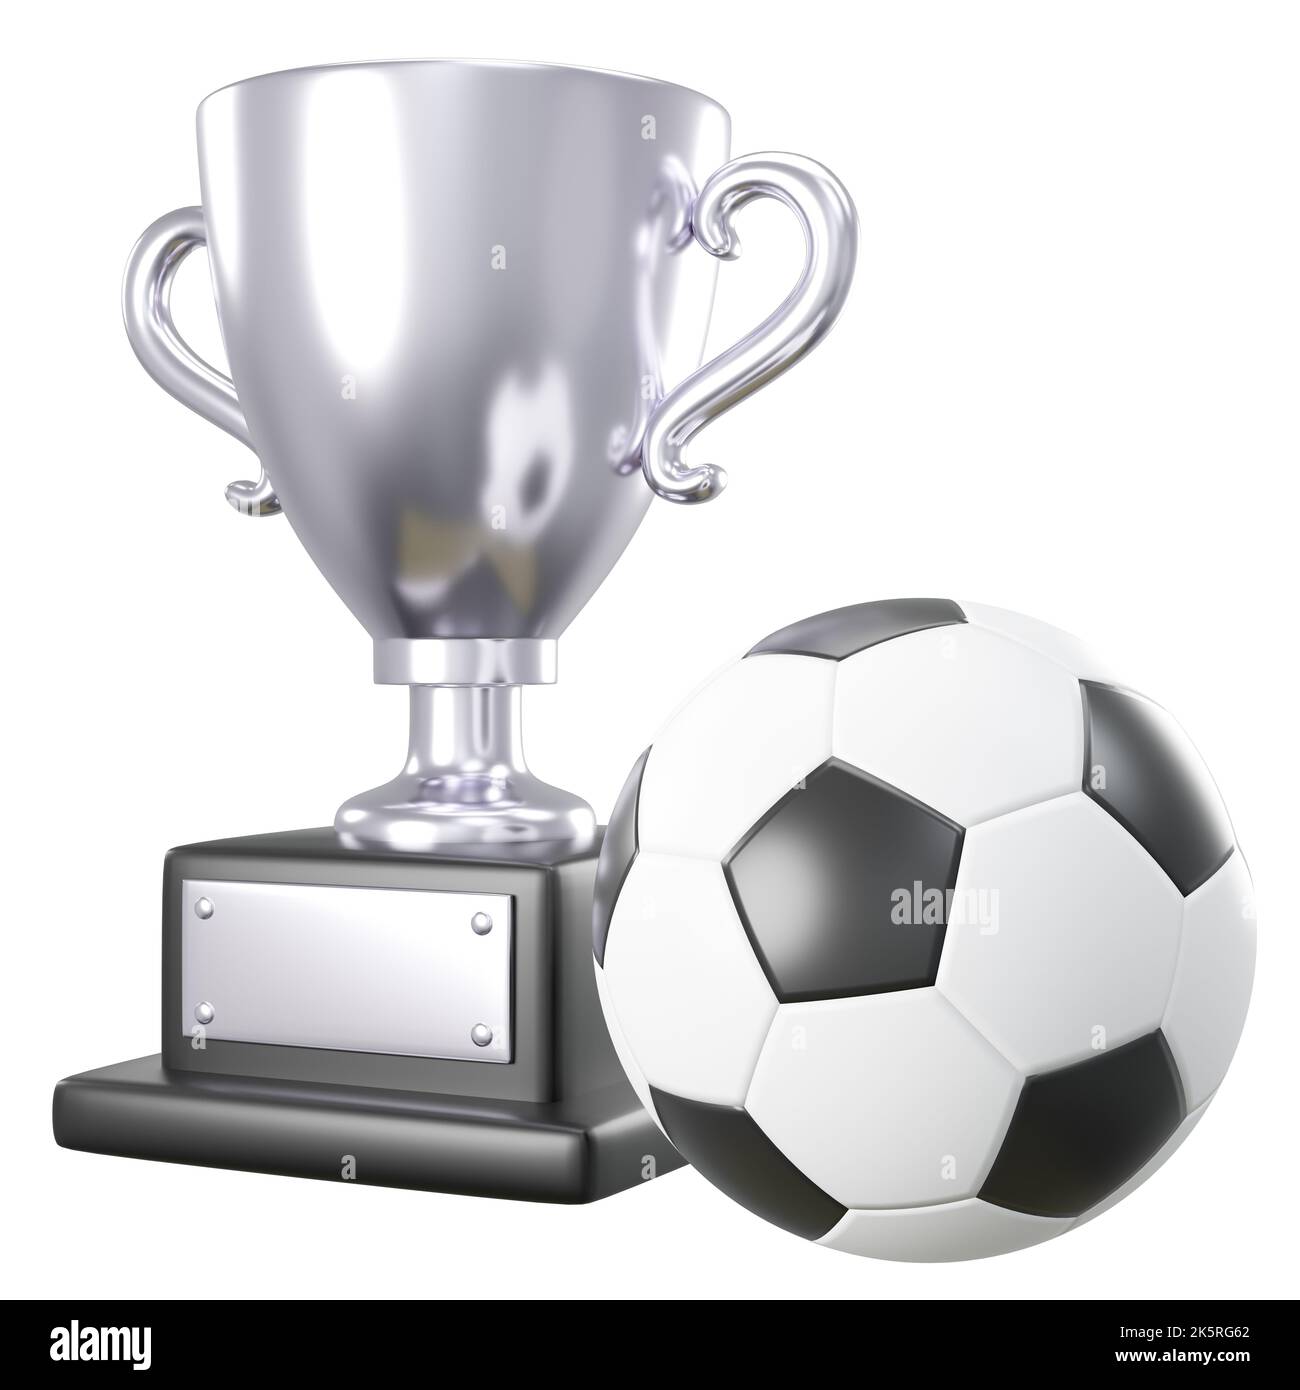 Trofeo Guantes Portero Futbol Dorado online - Trofeos de futbol